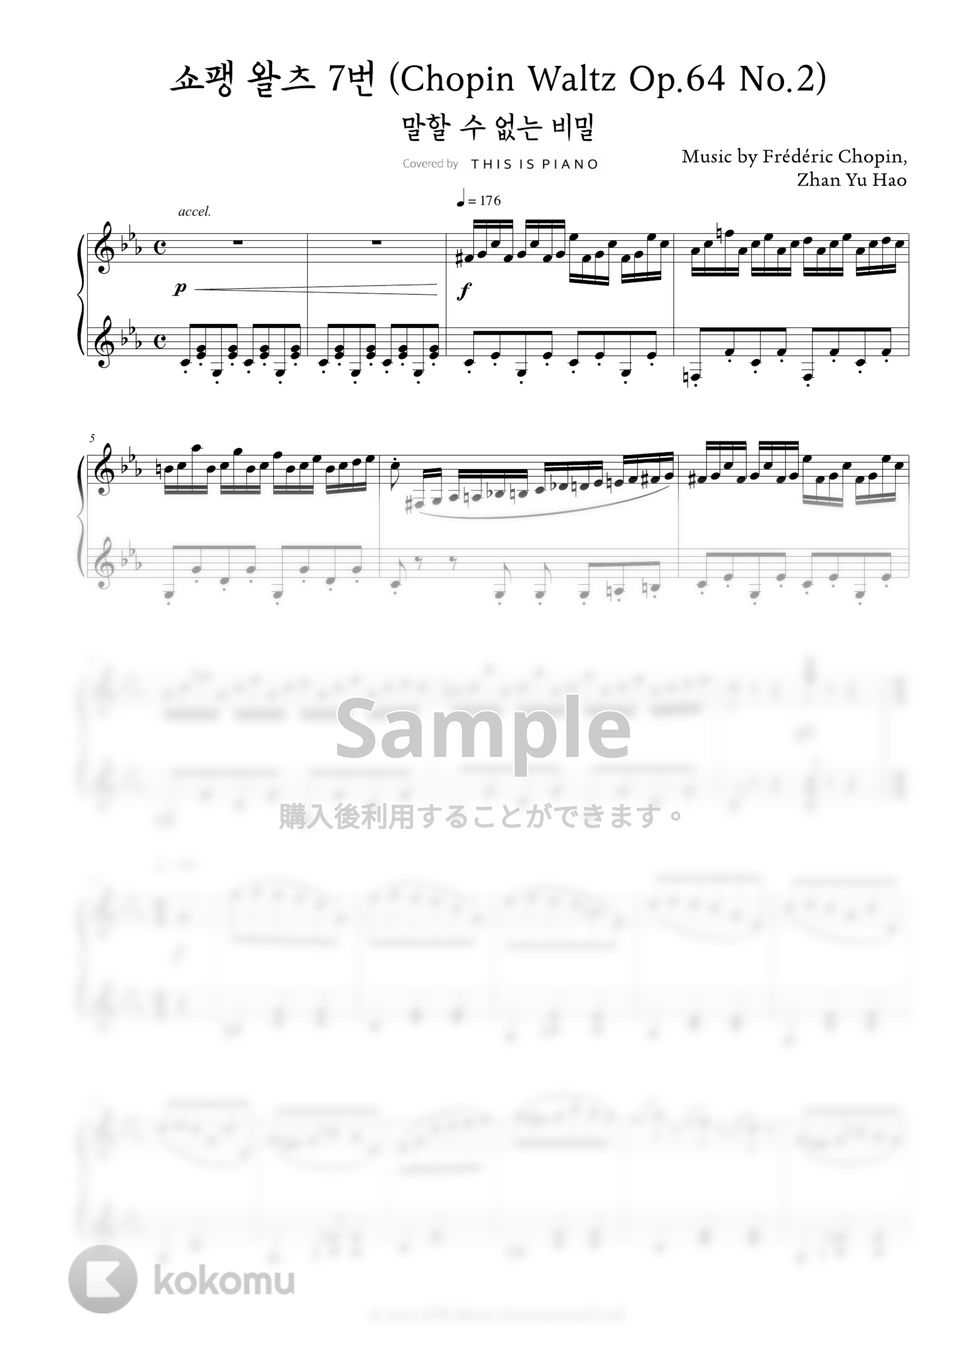 不能說的秘密 - 斗琴 (トイピアノ(32鍵盤)) by THIS IS PIANO